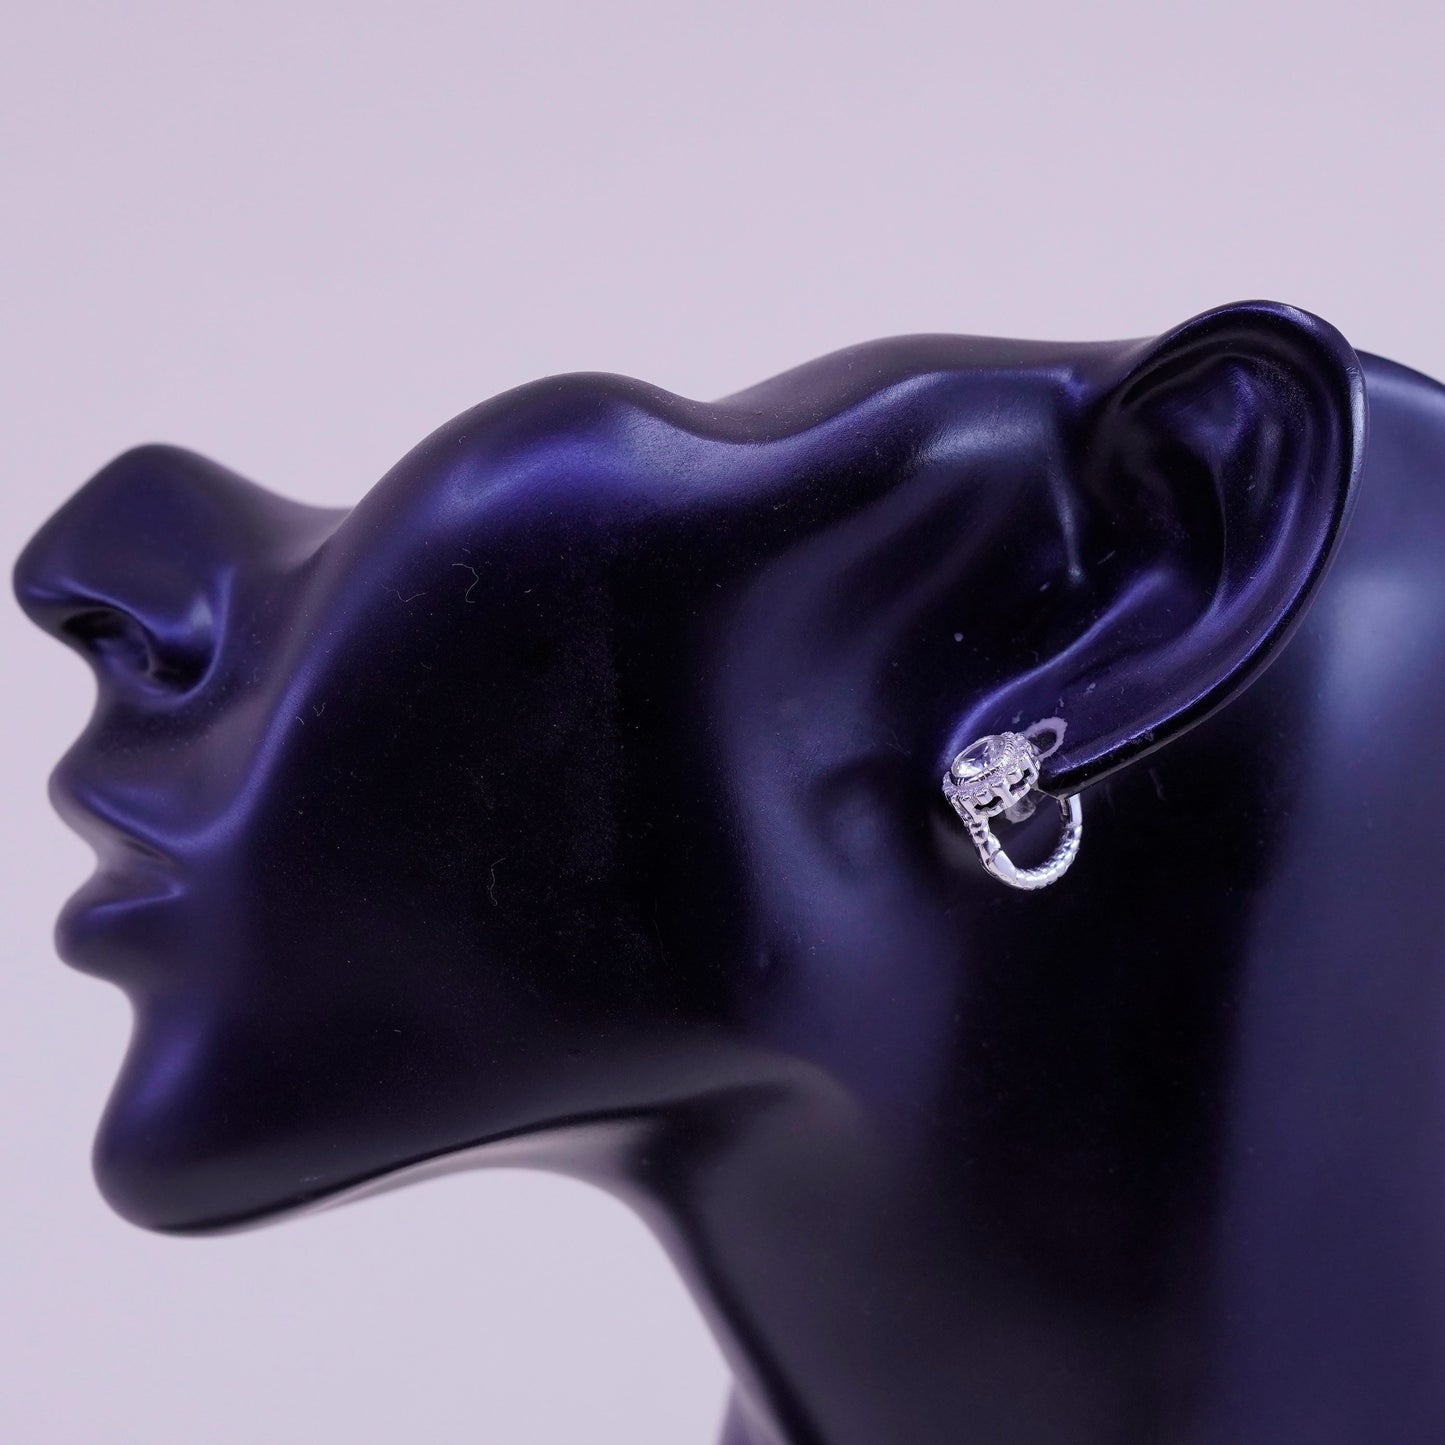 0.5”, Vintage sterling silver earrings, 925 hoops, huggie, with cz flower